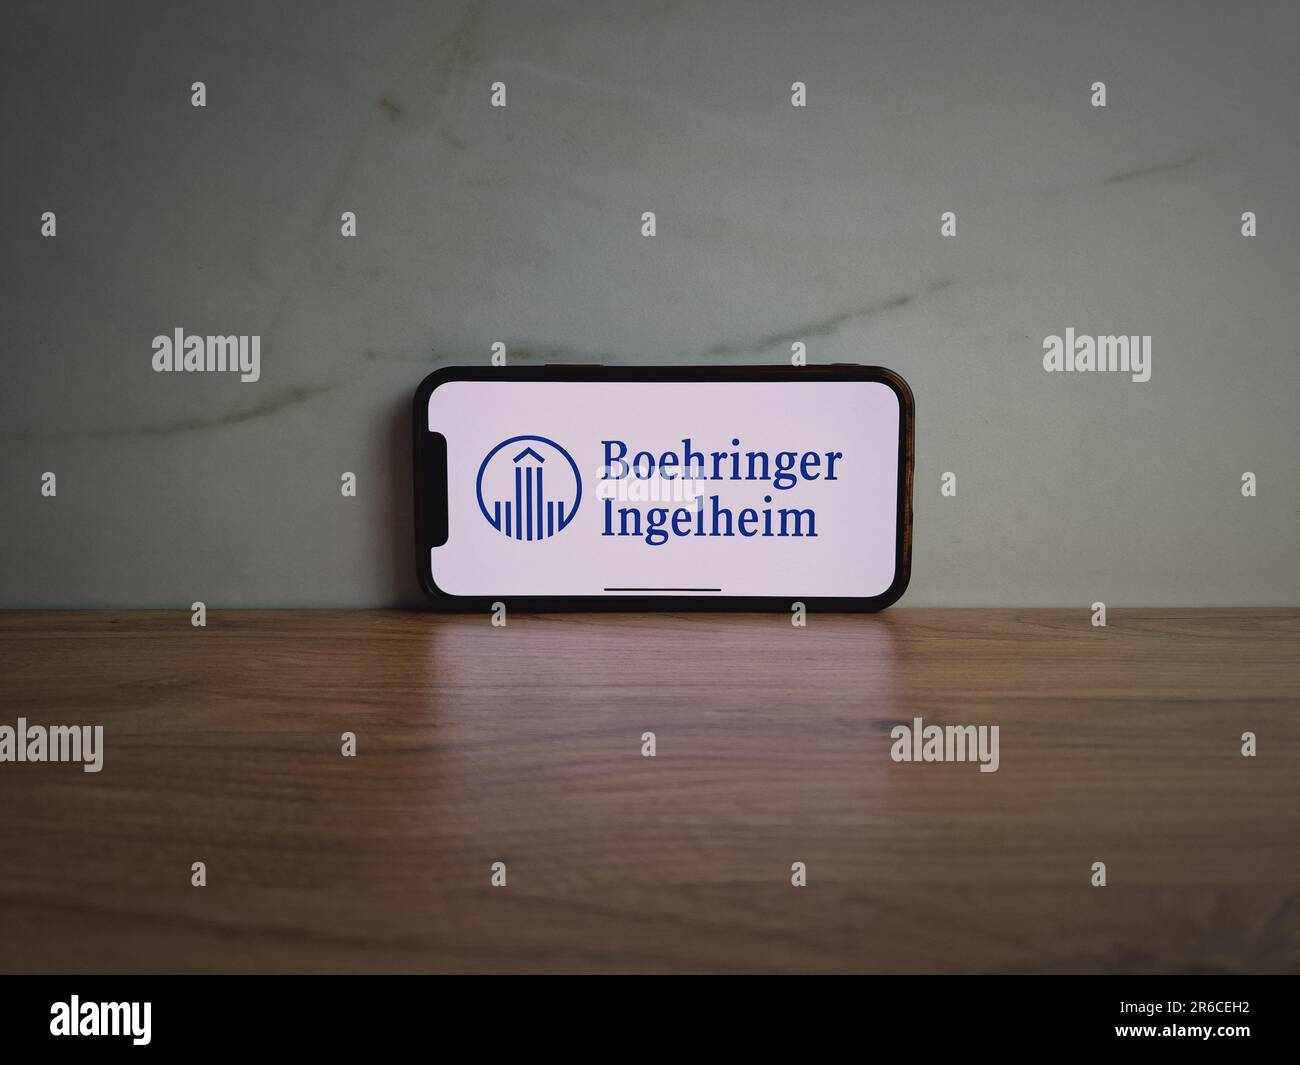 Konskie, Polonia - 8 giugno 2023: Il logo della società farmaceutica Boehringer Ingelheim è visualizzato sullo schermo del telefono cellulare Foto Stock